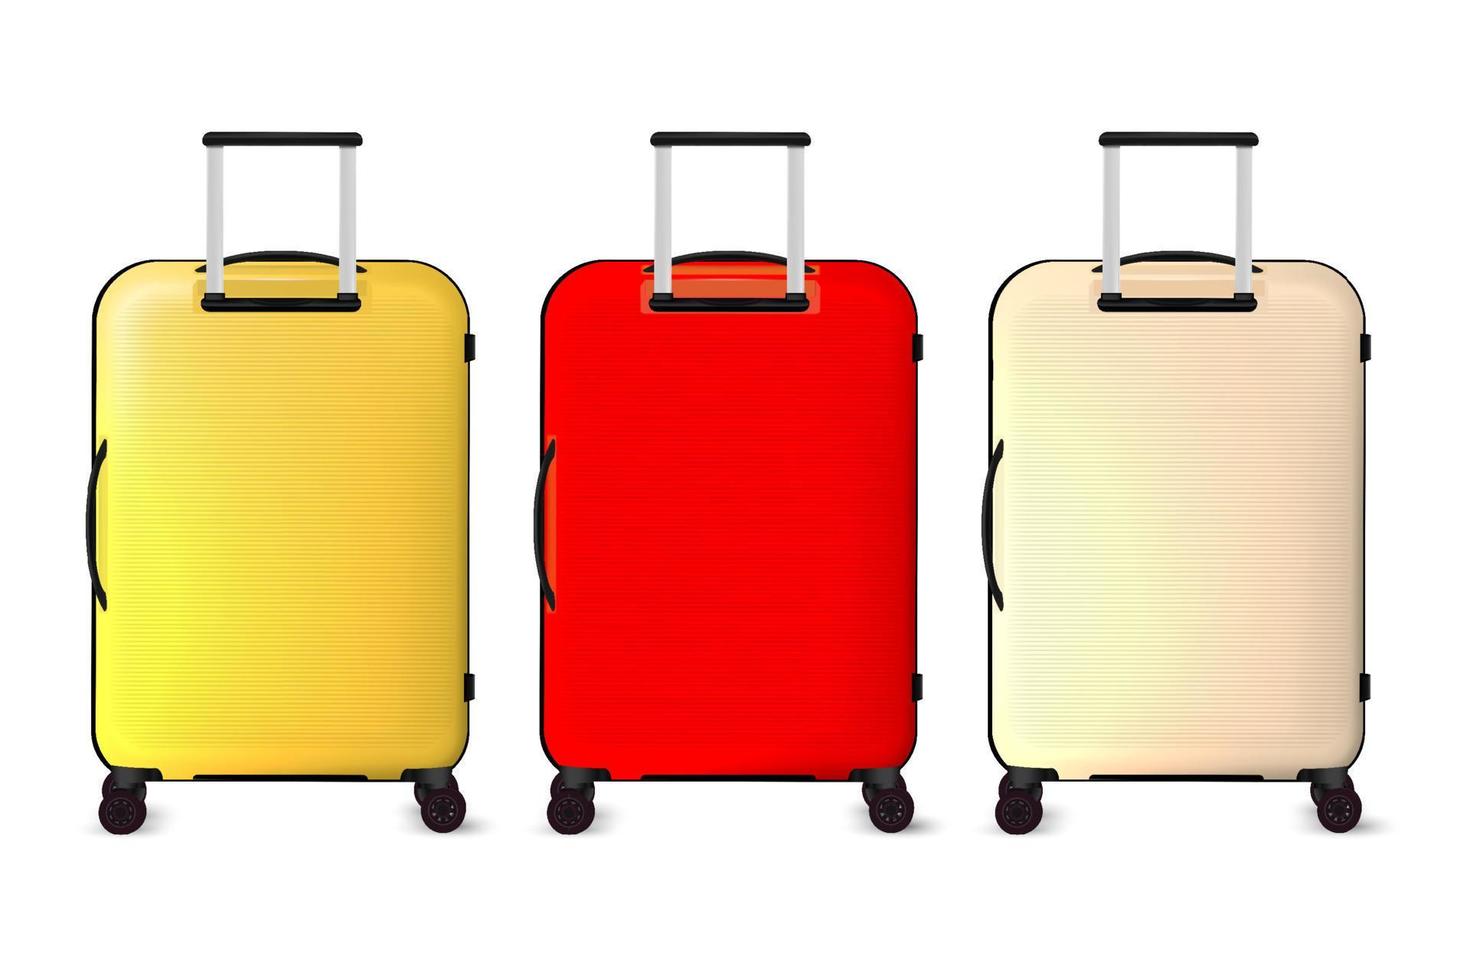 3d vektor illustration uppsättning av bagage resväska resa påsar. resa bagage fall på hjul med handtag, realistisk semester turist väska. flygplats bära portfölj, plast resa vagn.